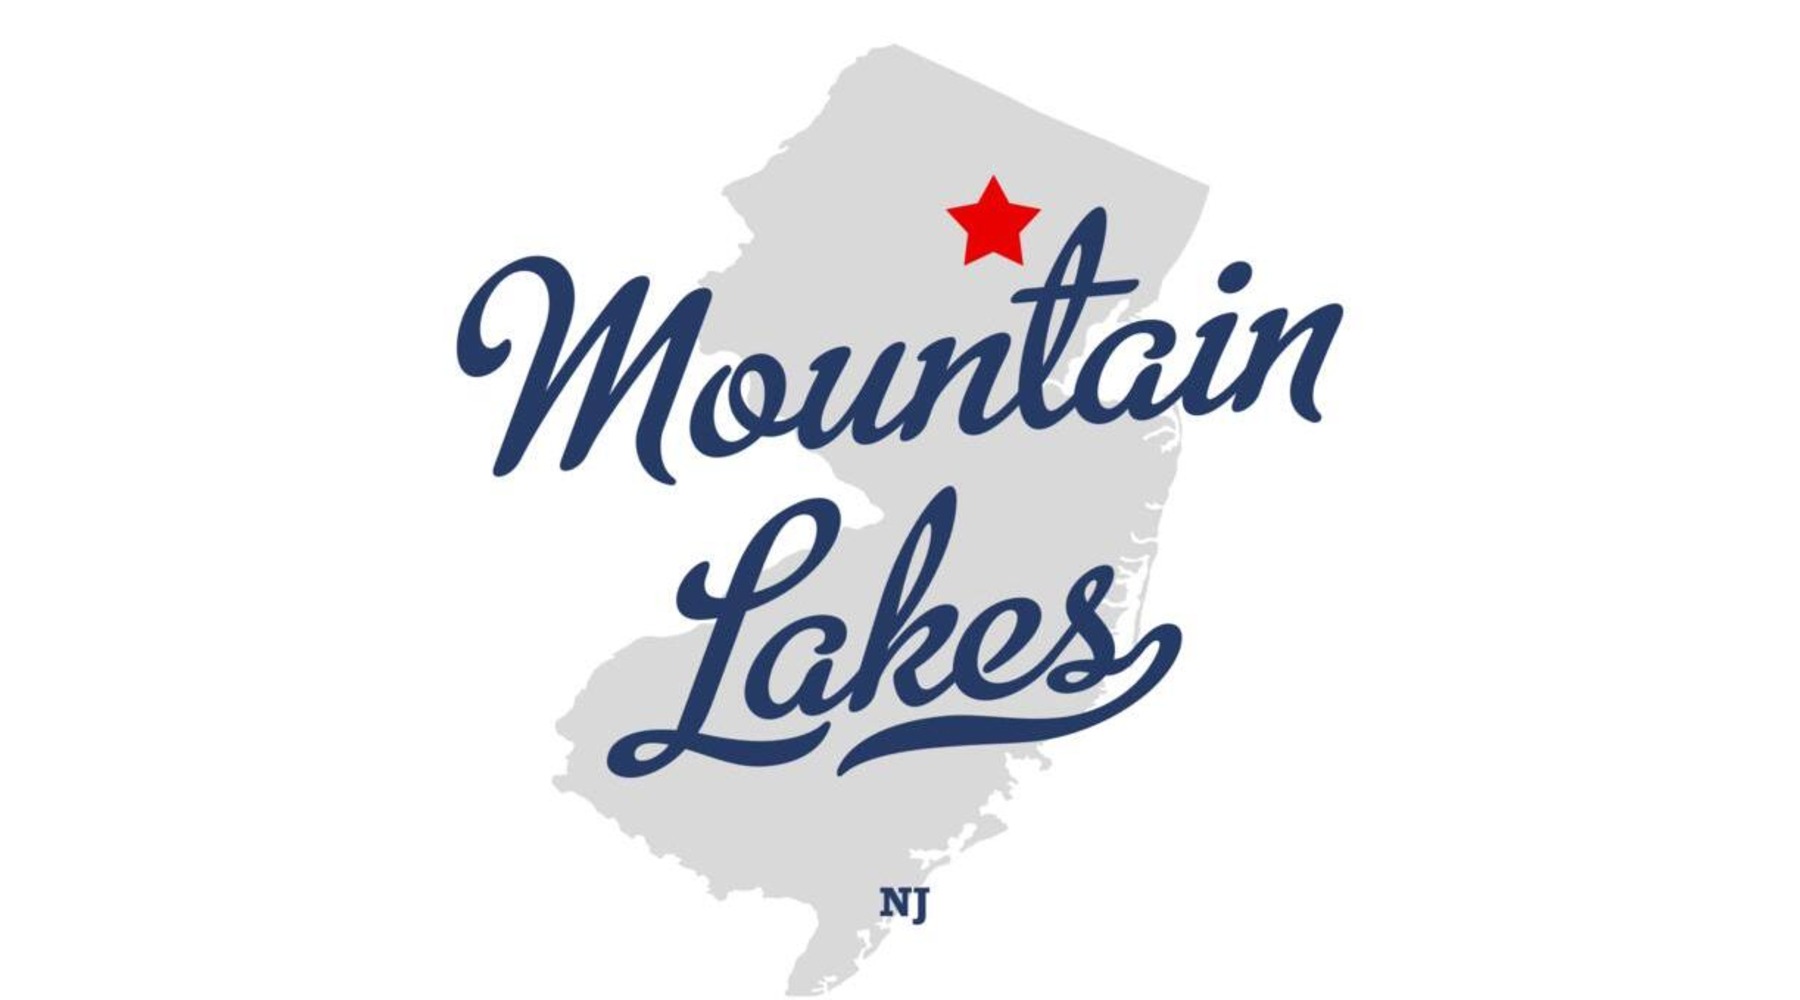 Mountain Lakes, 07046